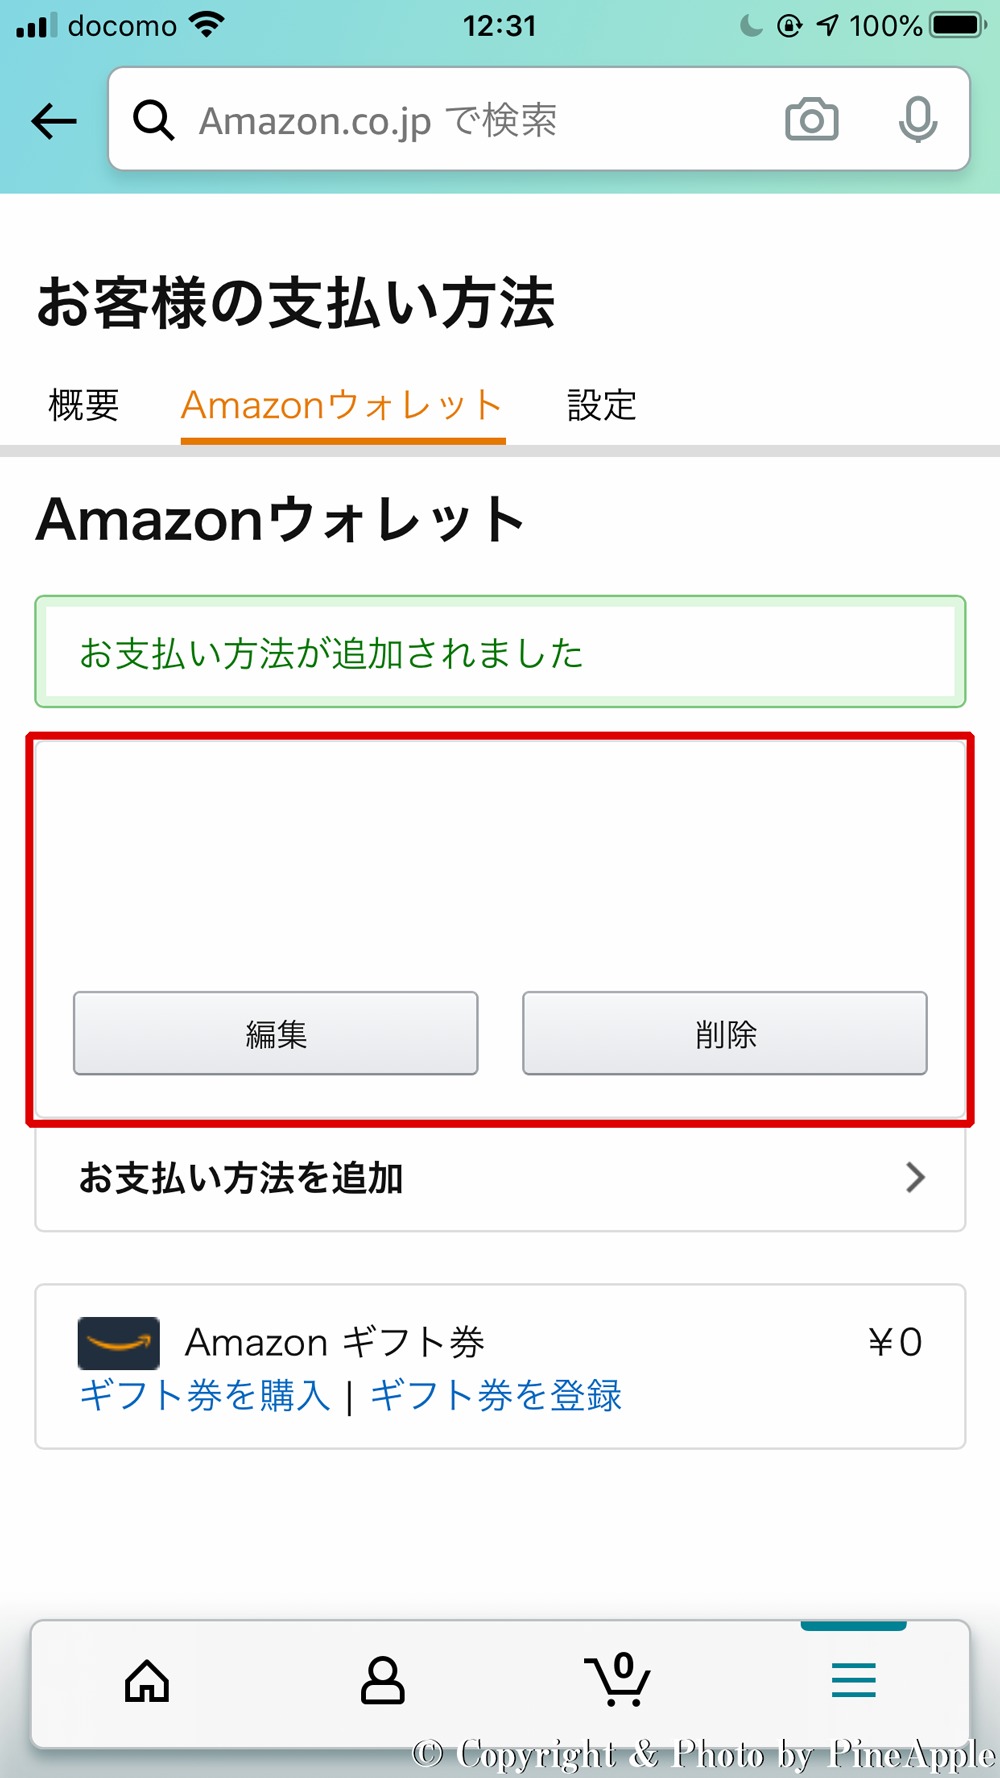 Amazon ショッピングアプリ：「お支払い方法が追加されました」のメッセージが表示され、クレジットカードが登録